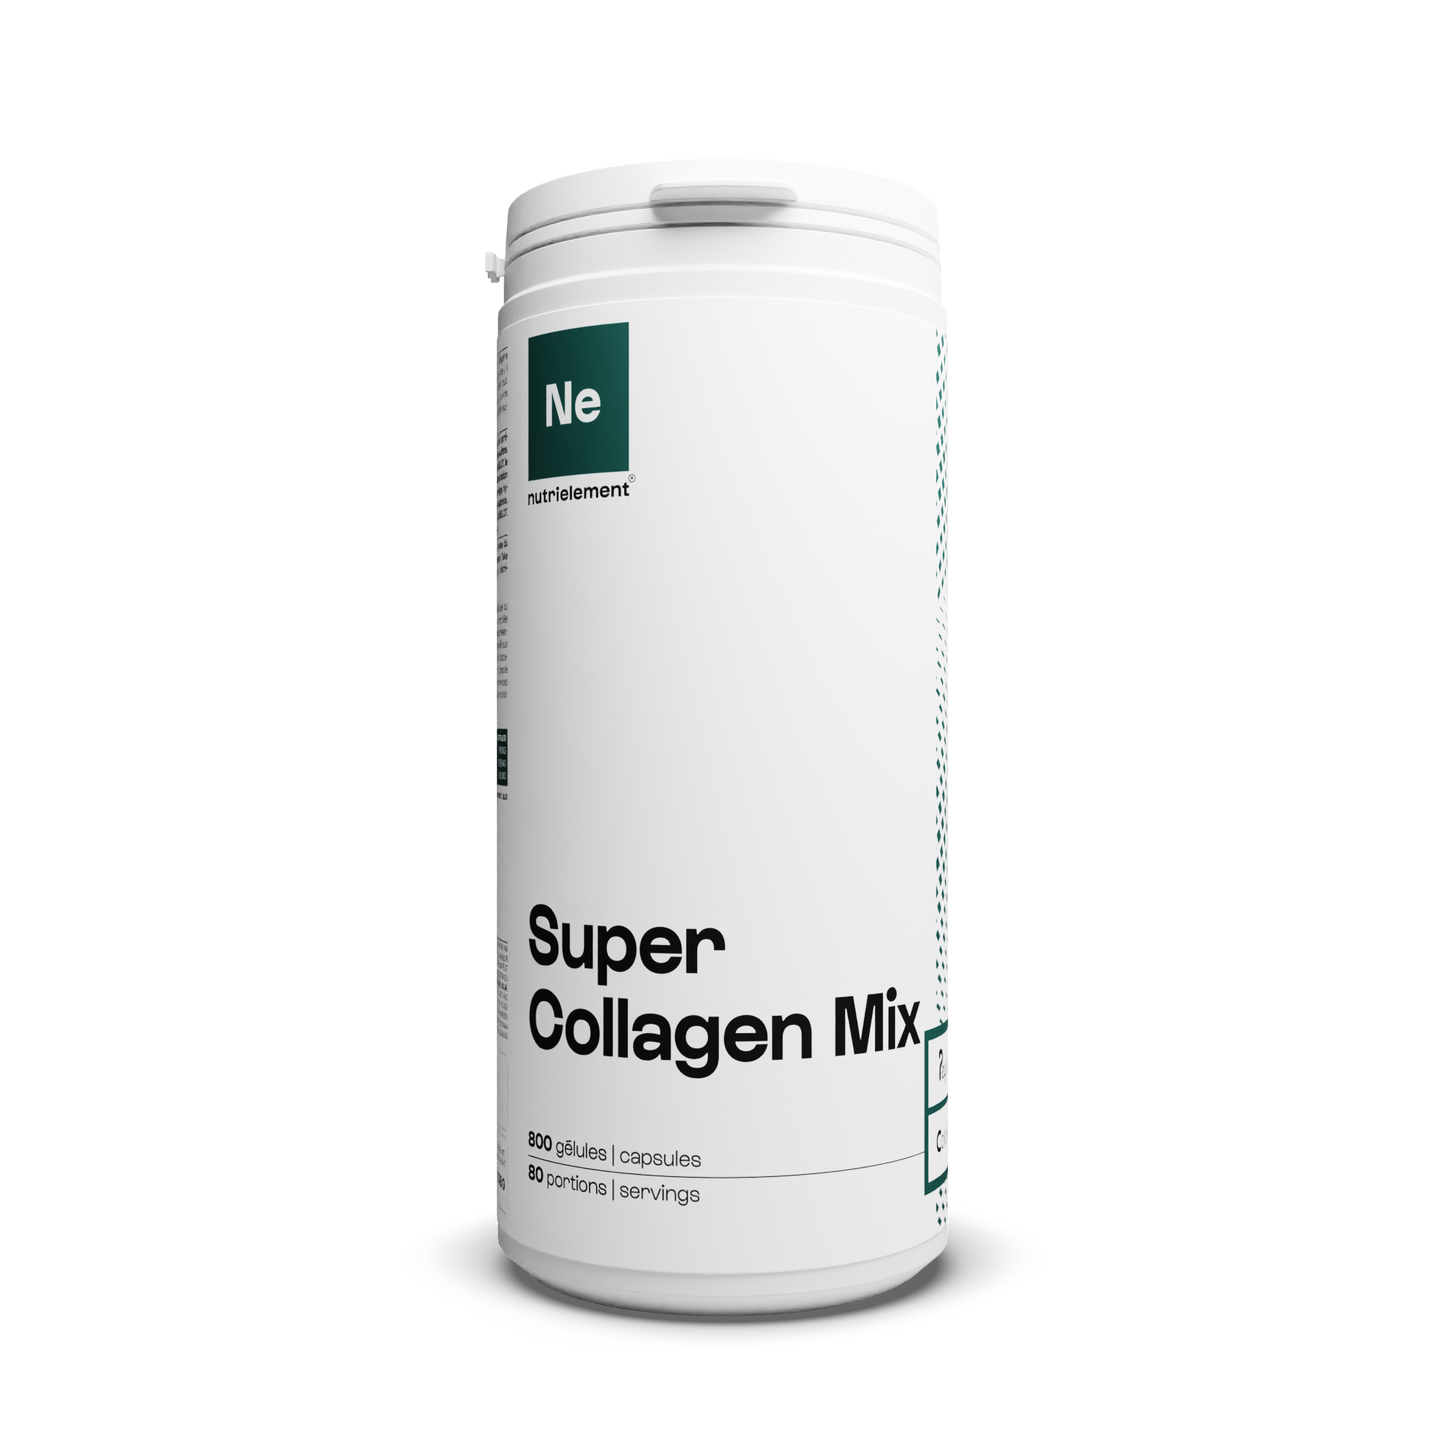 Super Collagen mix in capsules